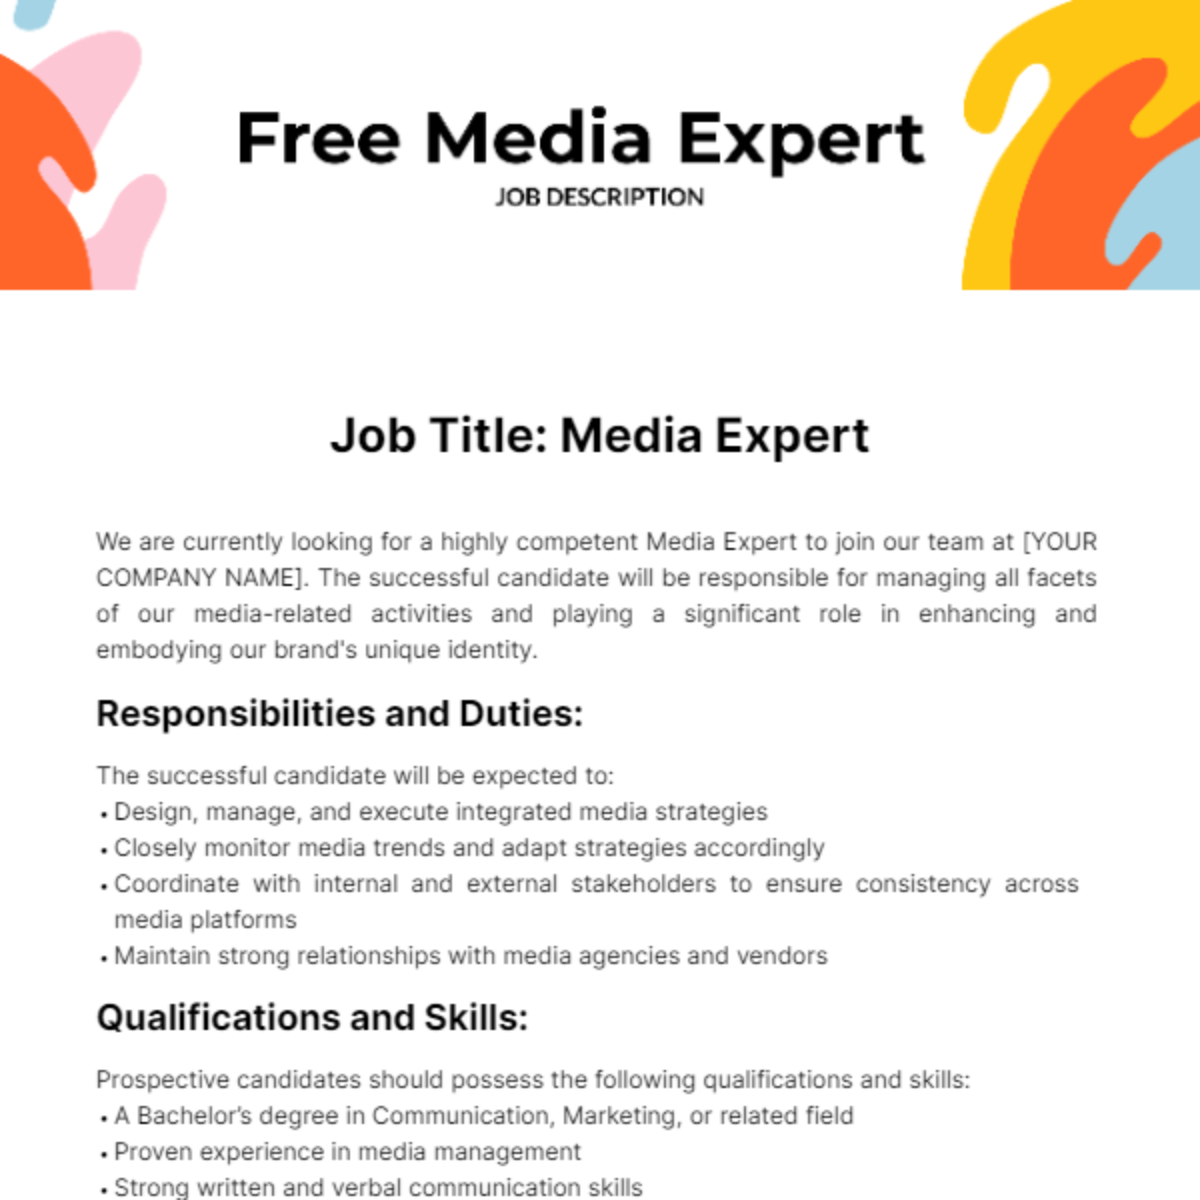 Free Media Expert Job Description Template